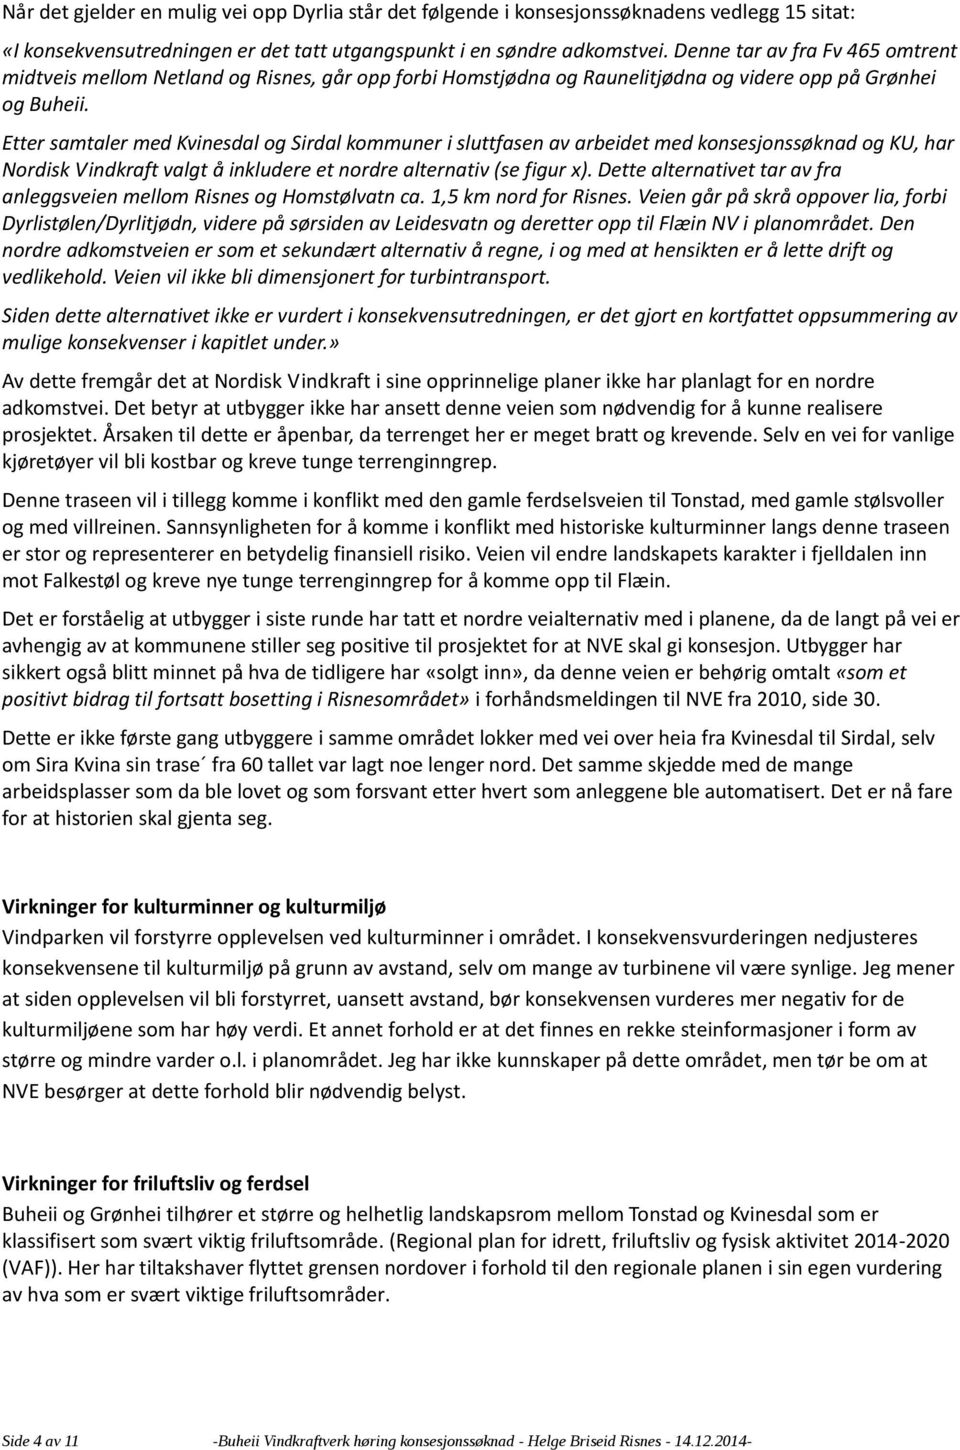 Etter samtaler med Kvinesdal og Sirdal kommuner i sluttfasen av arbeidet med konsesjonssøknad og KU, har Nordisk Vindkraft valgt å inkludere et nordre alternativ (se figur x).